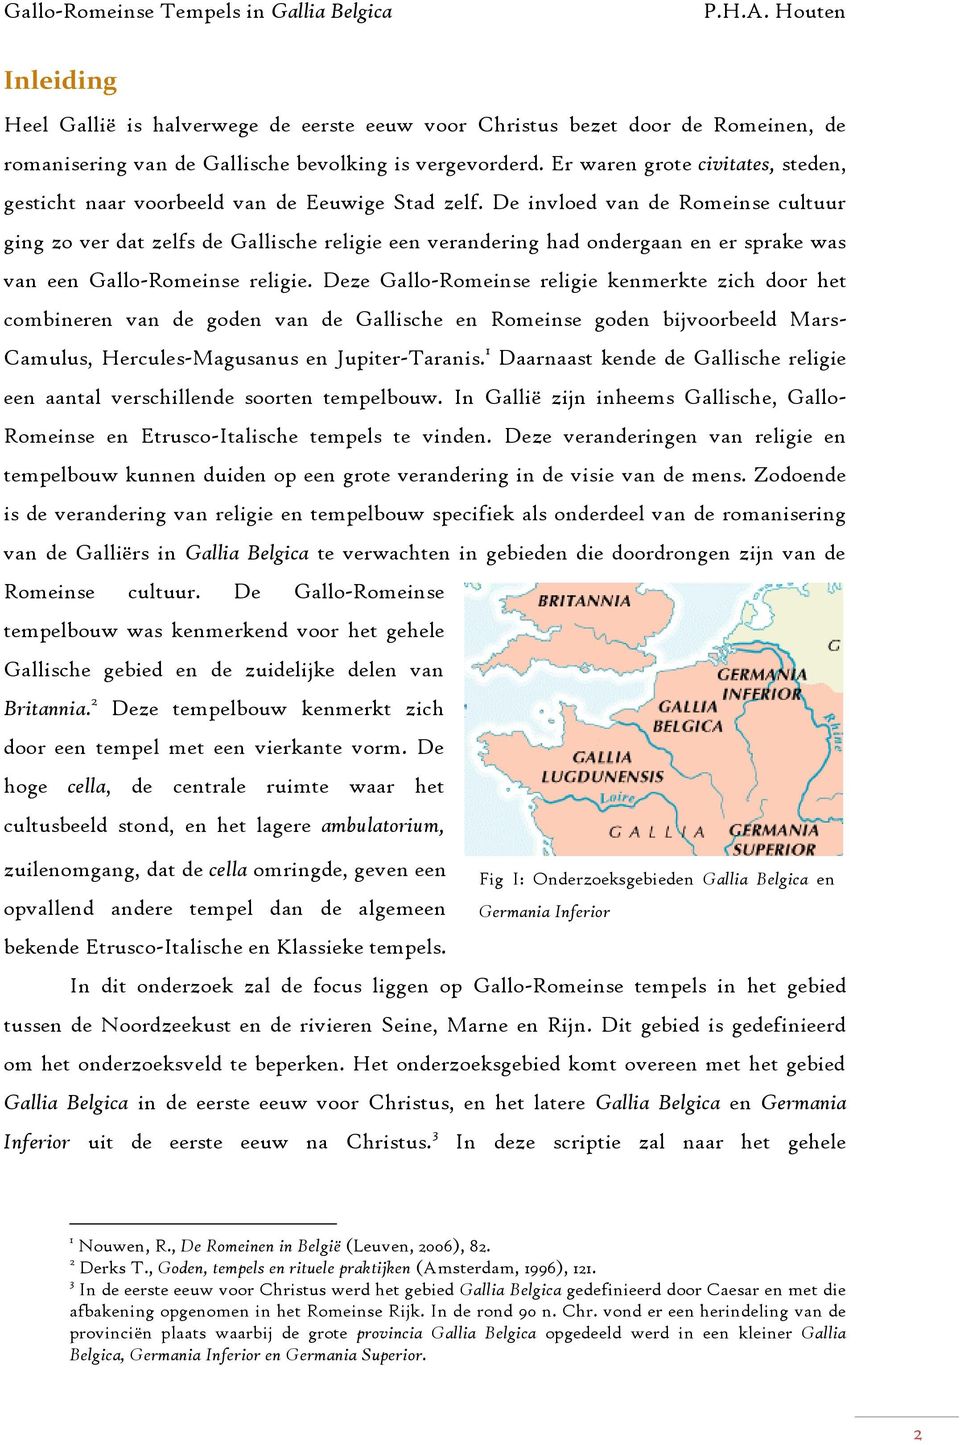 De invloed van de Romeinse cultuur ging zo ver dat zelfs de Gallische religie een verandering had ondergaan en er sprake was van een Gallo-Romeinse religie.